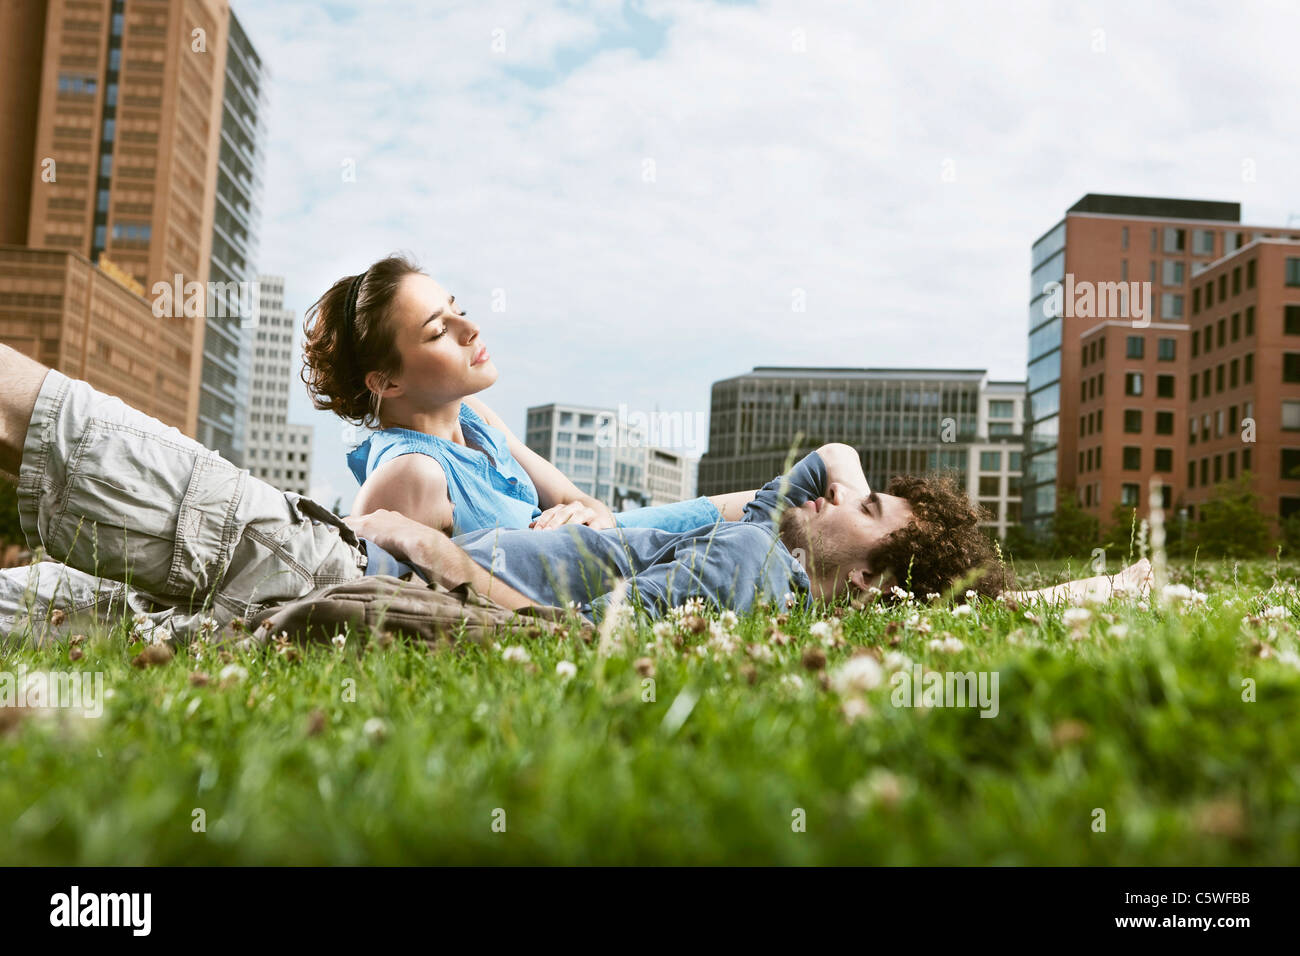 Germania Berlino giovane coppia giacendo in prato, edifici alti in background Foto Stock